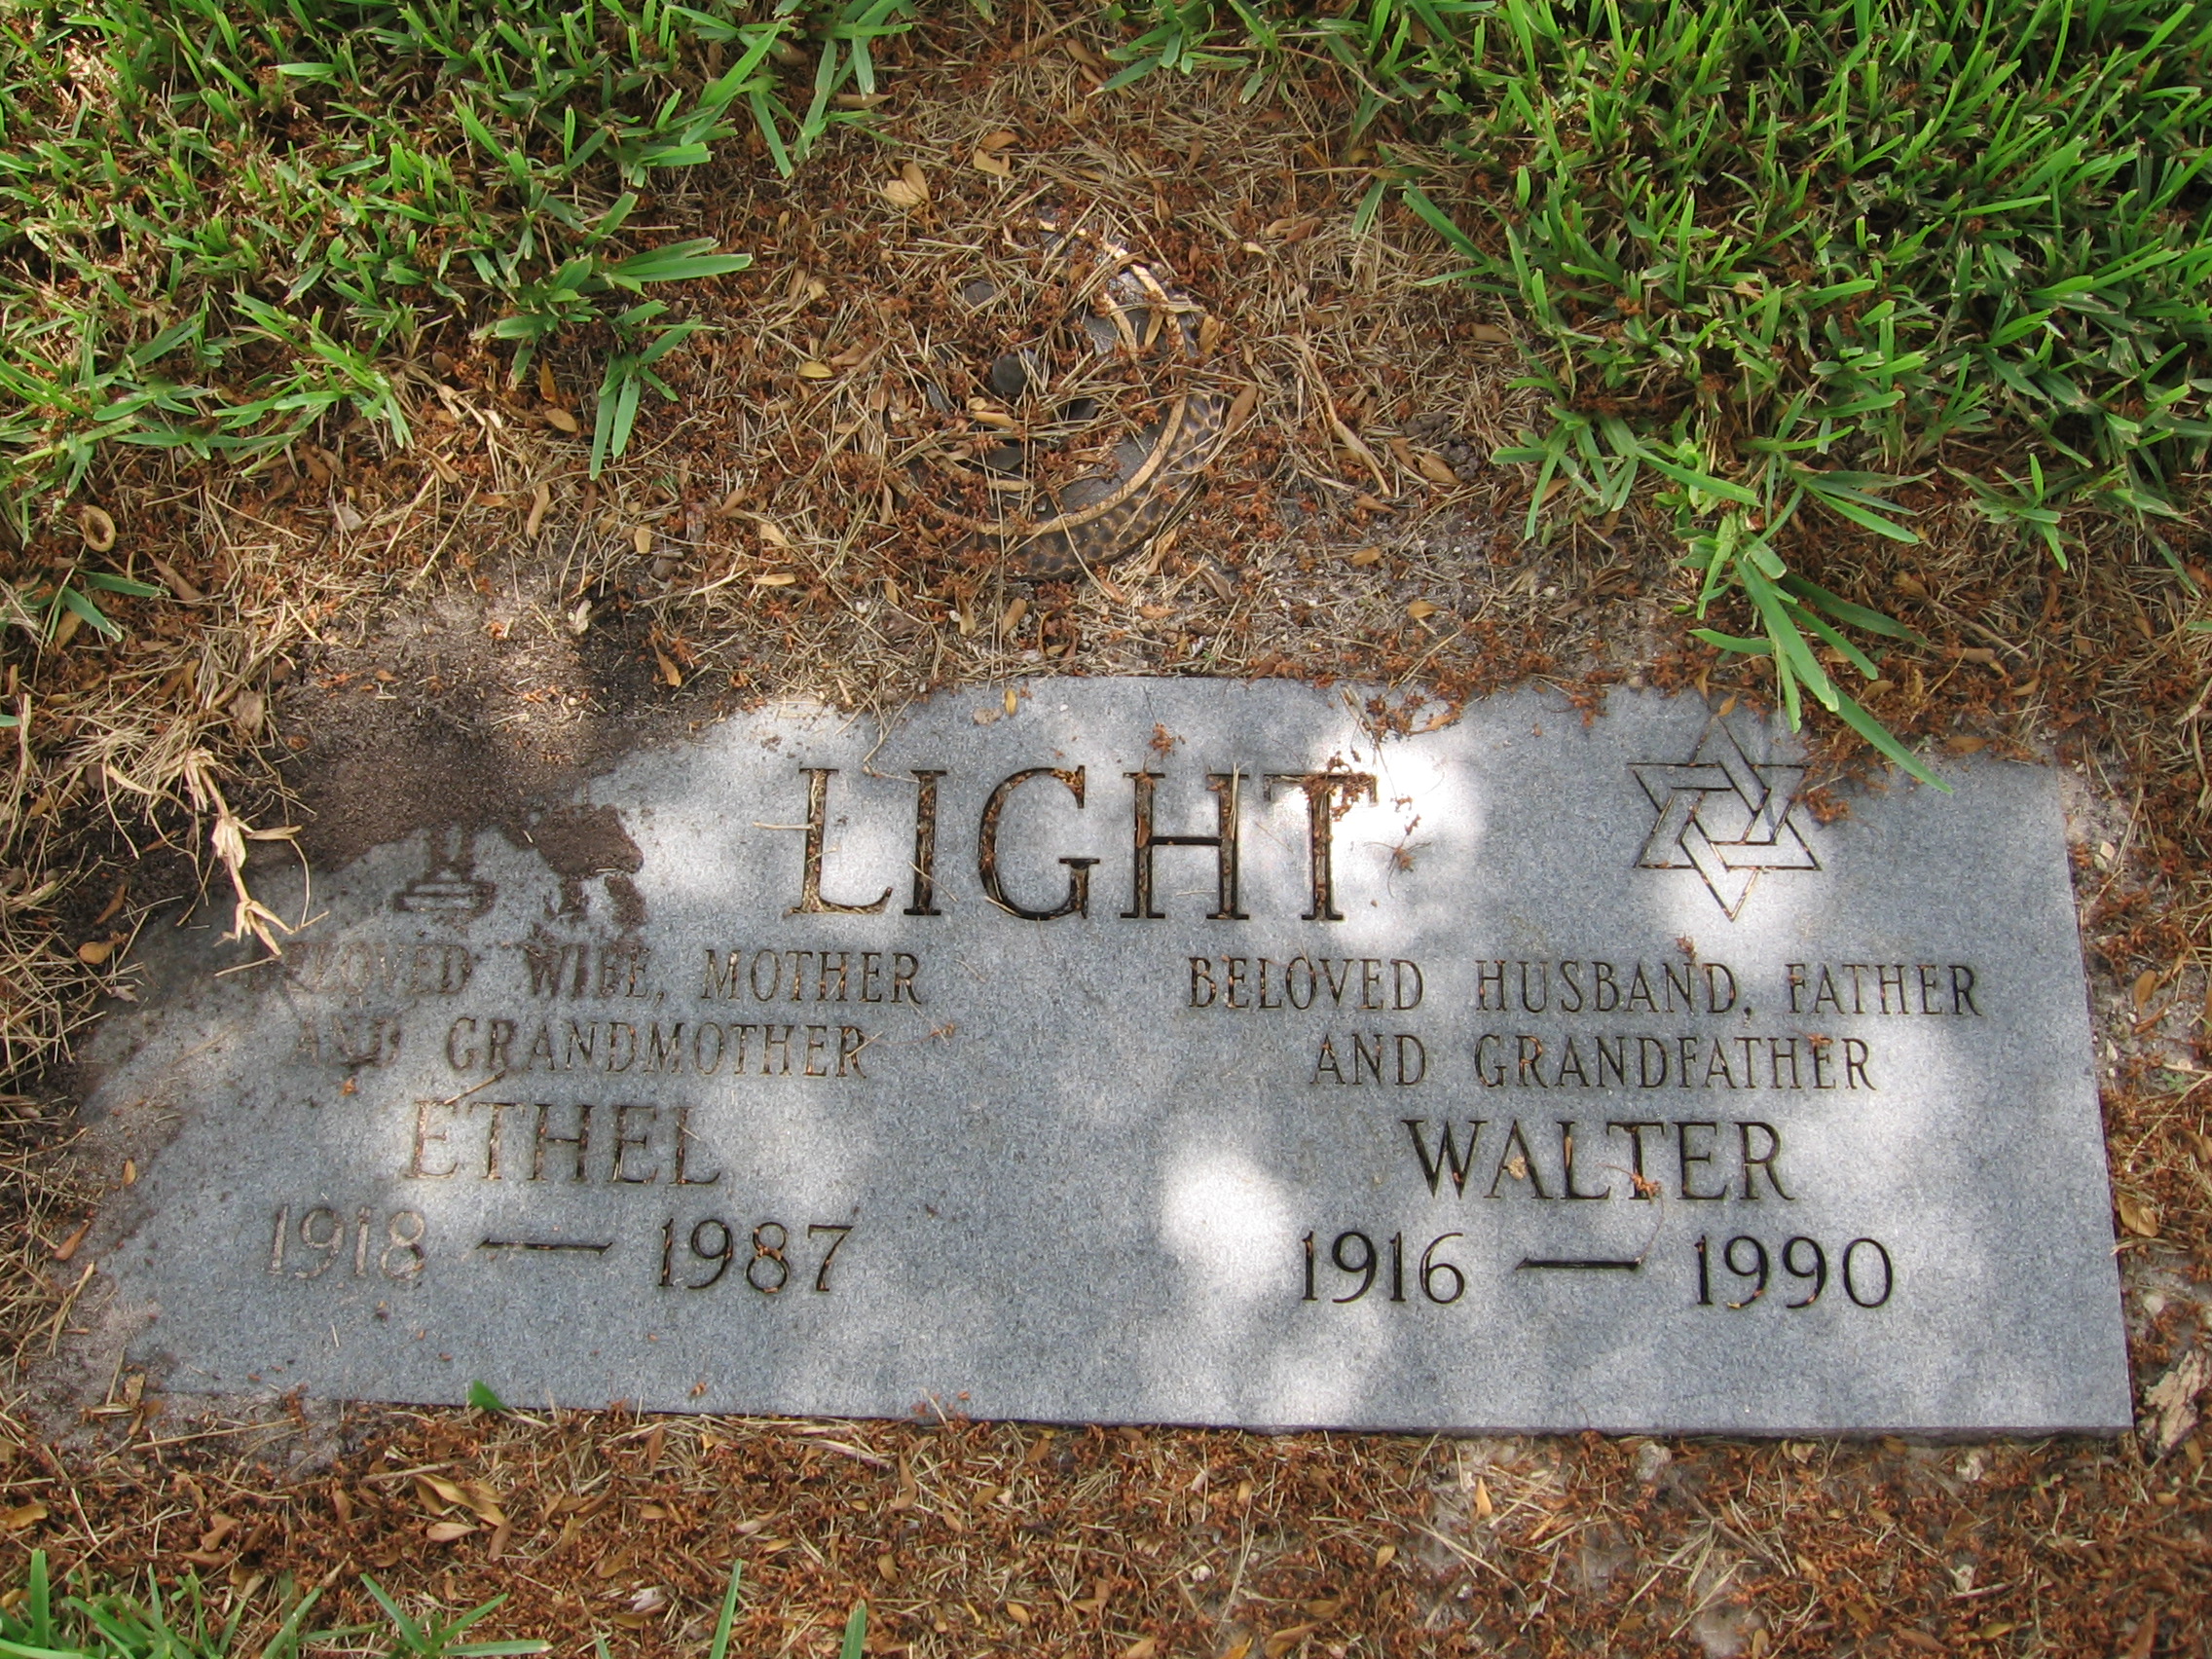 Ethel Light